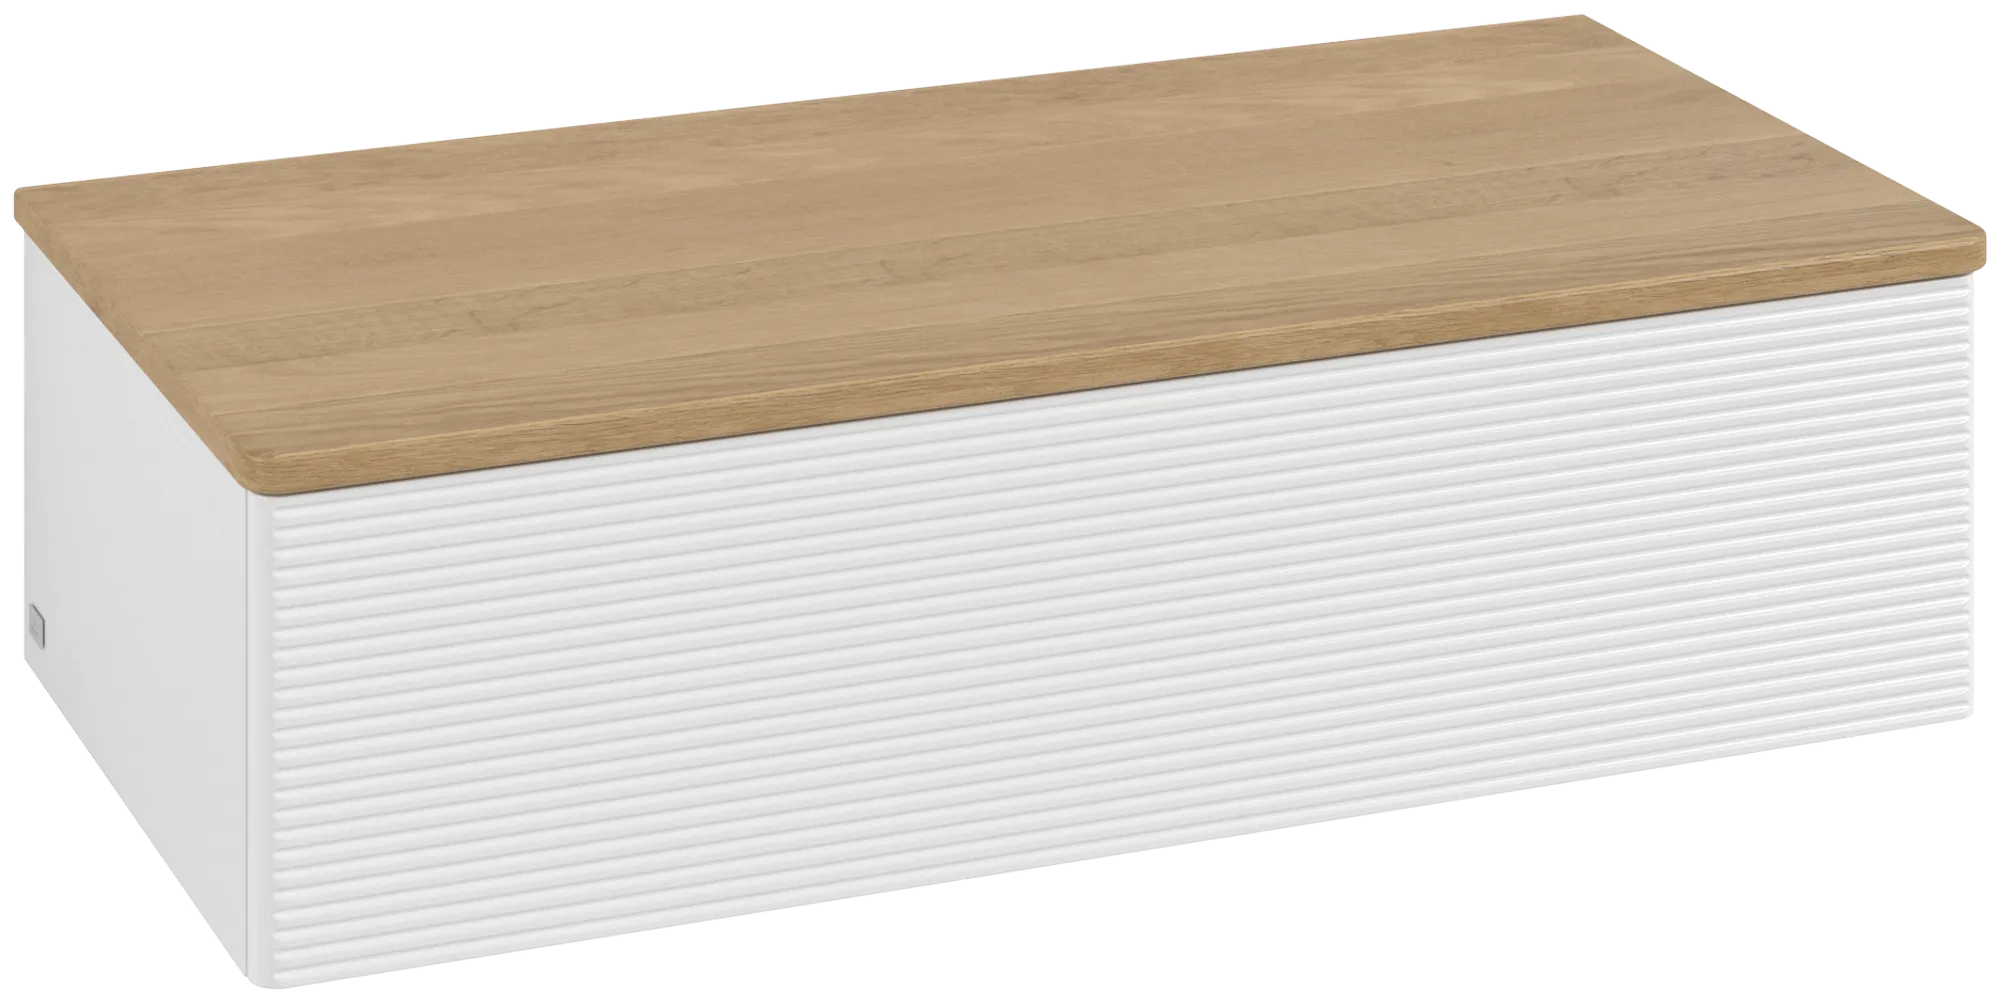 εικόνα του VILLEROY BOCH Antao Sideboard, 1 pull-out compartment, 1000 x 268 x 500 mm, Front with grain texture, Glossy White Lacquer / Honey Oak #K40101GF